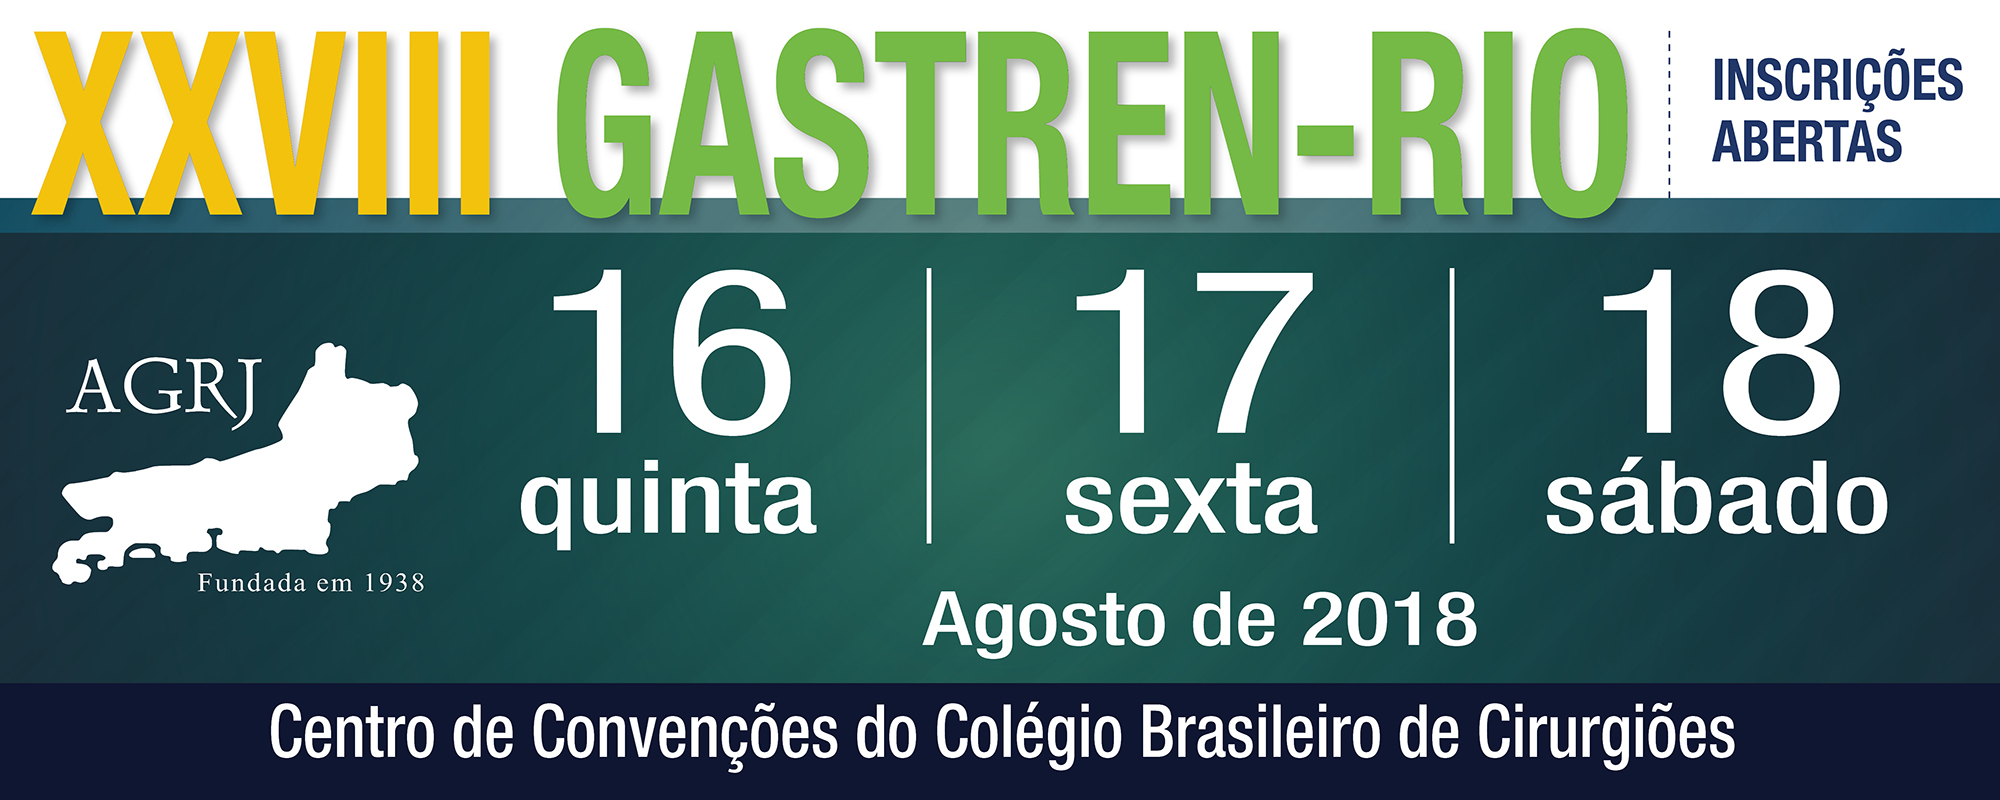 XXVIII GASTREN-RIO_FAIXA-INTERNA-SITE